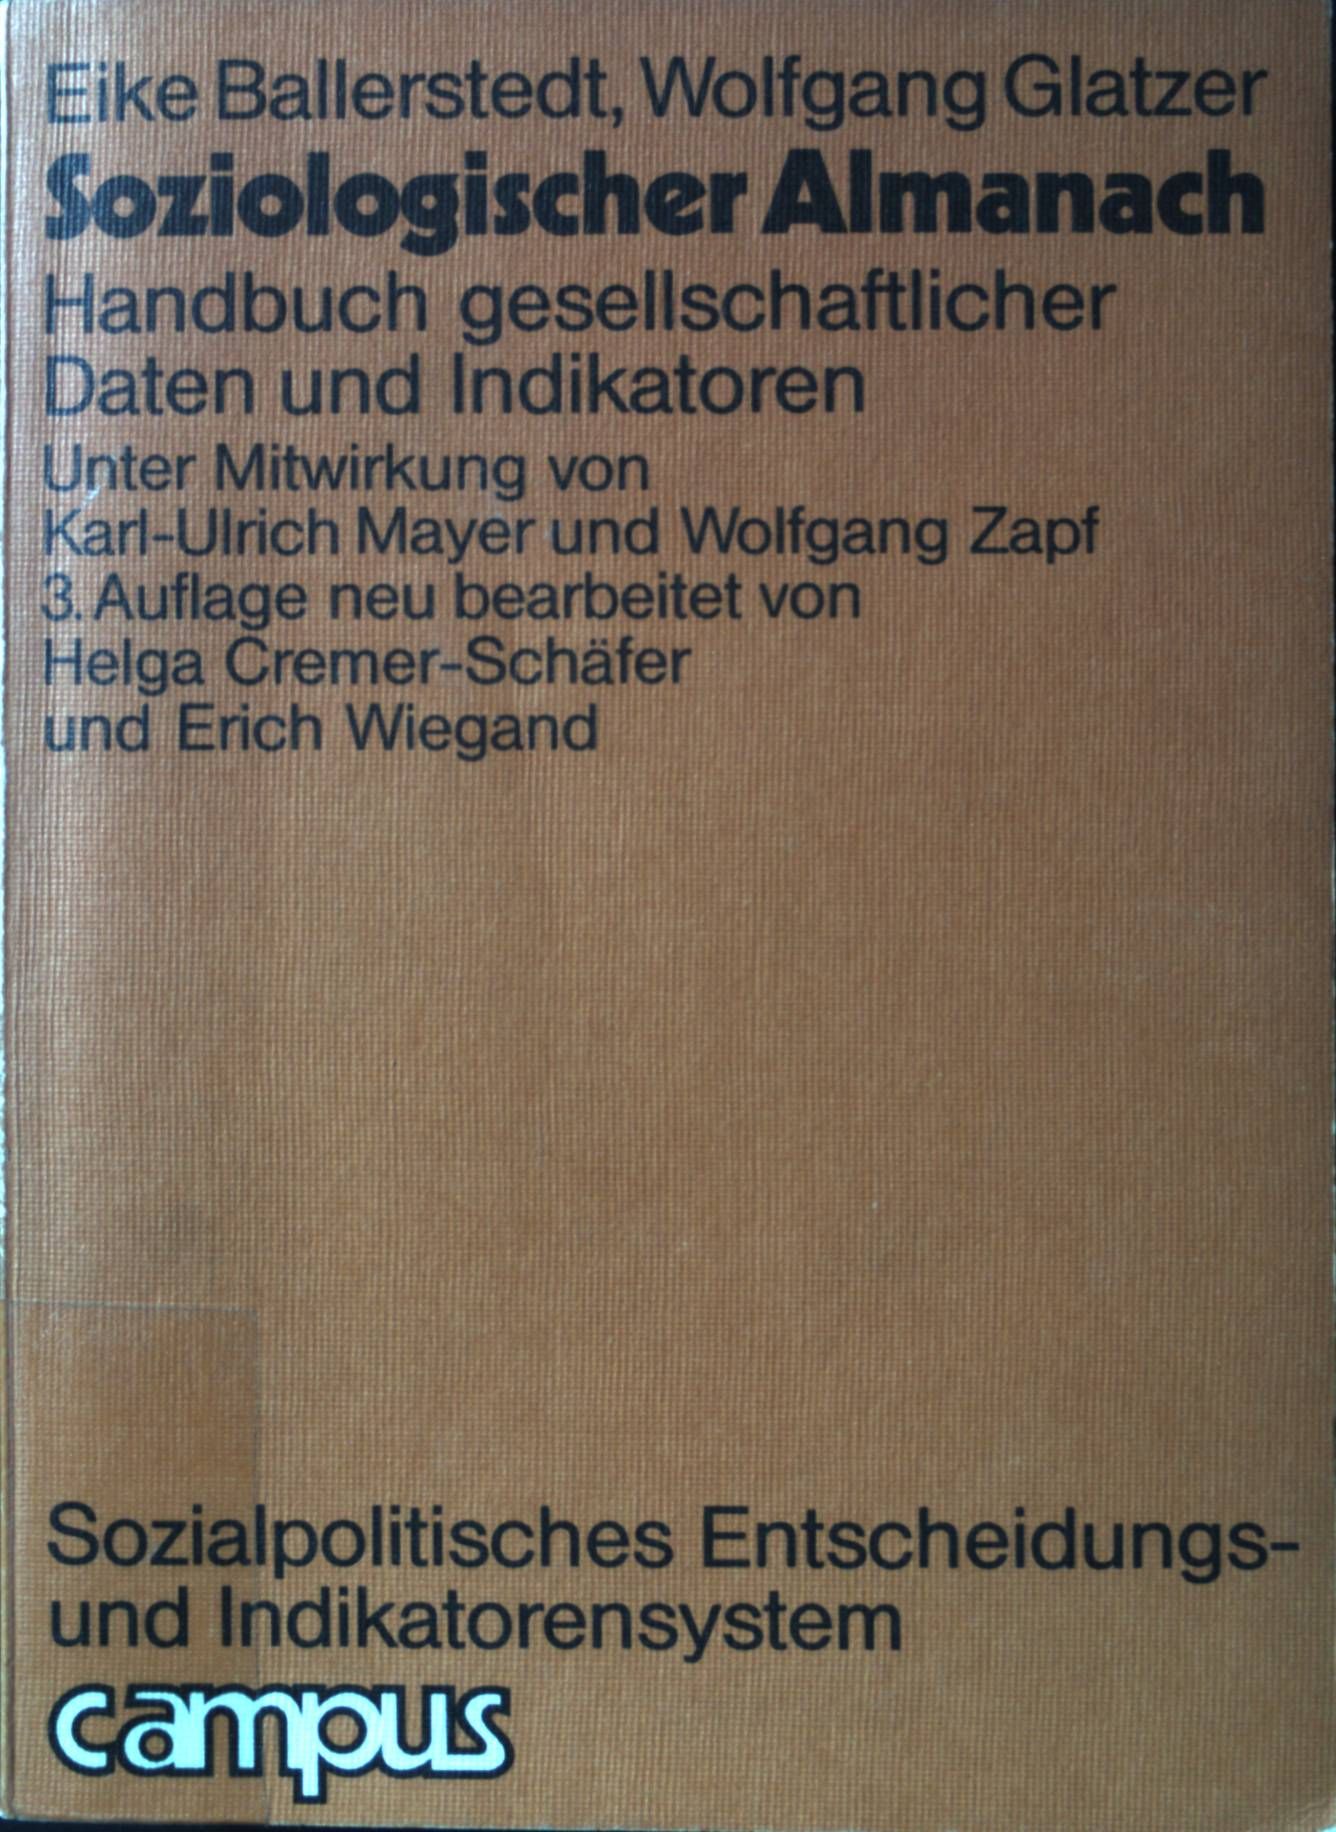 Soziologischer Almanach : Handbuch gesellschaftl. Daten u. Indikatoren. SPES ; Bd. 5. - Ballerstedt, Eike, Wolfgang Glatzer und Helga Cremer-Schäfer